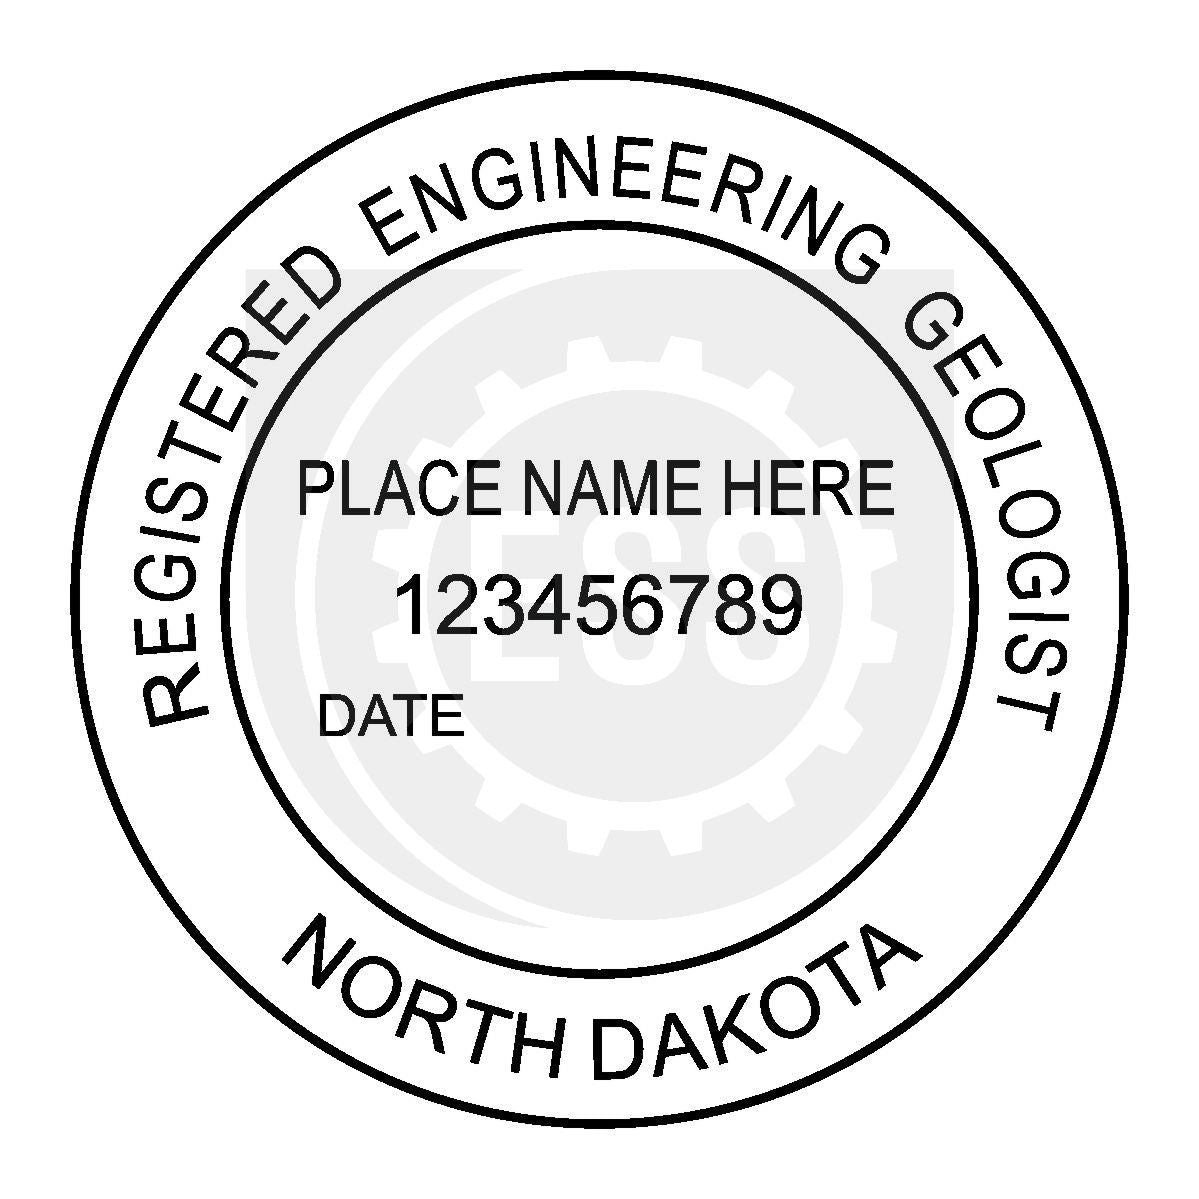 North Dakota Engineering Geologist Seal Setup